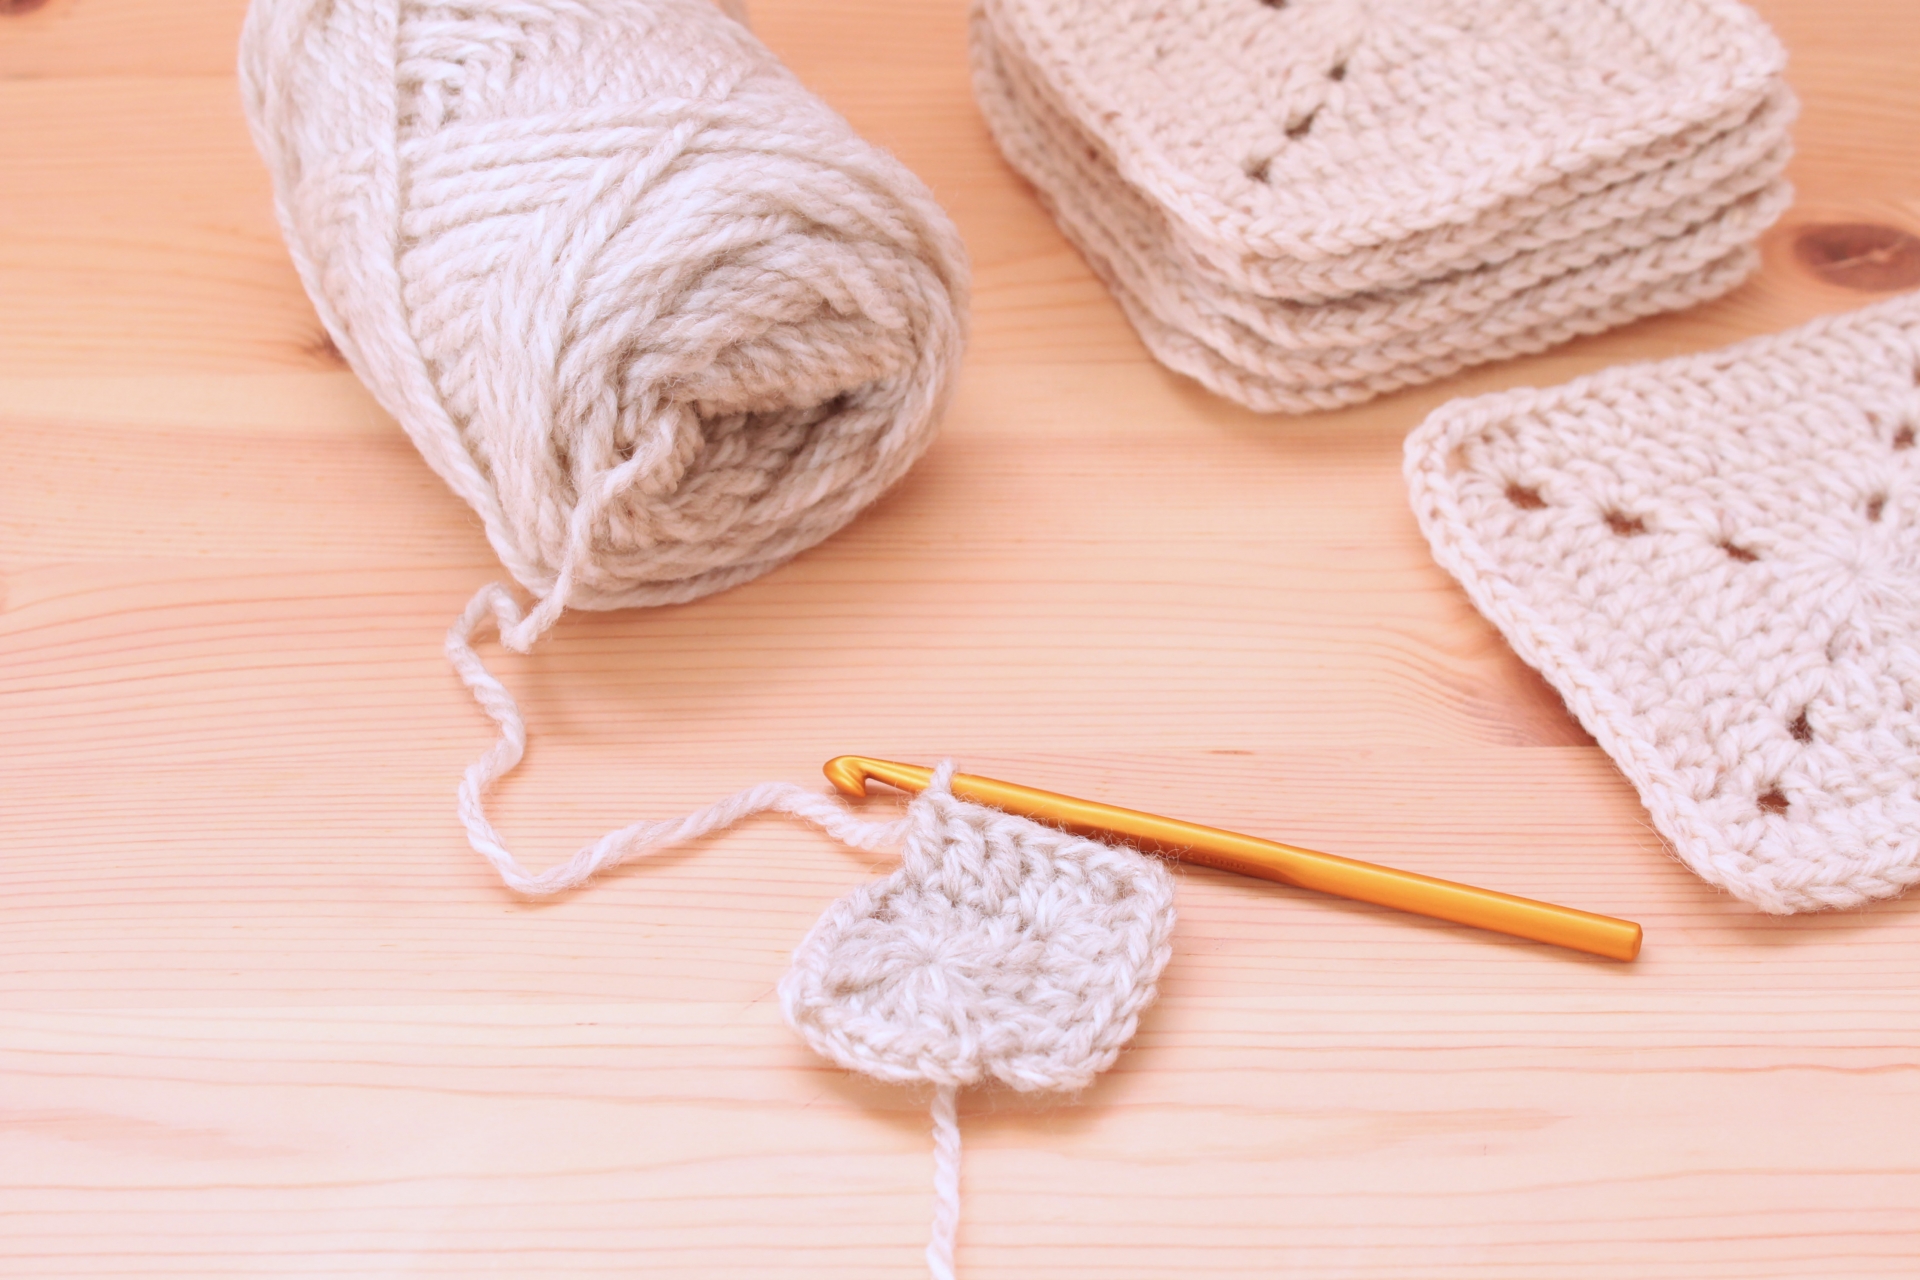 個性豊かな編み目を表現できる「かぎ針編み」